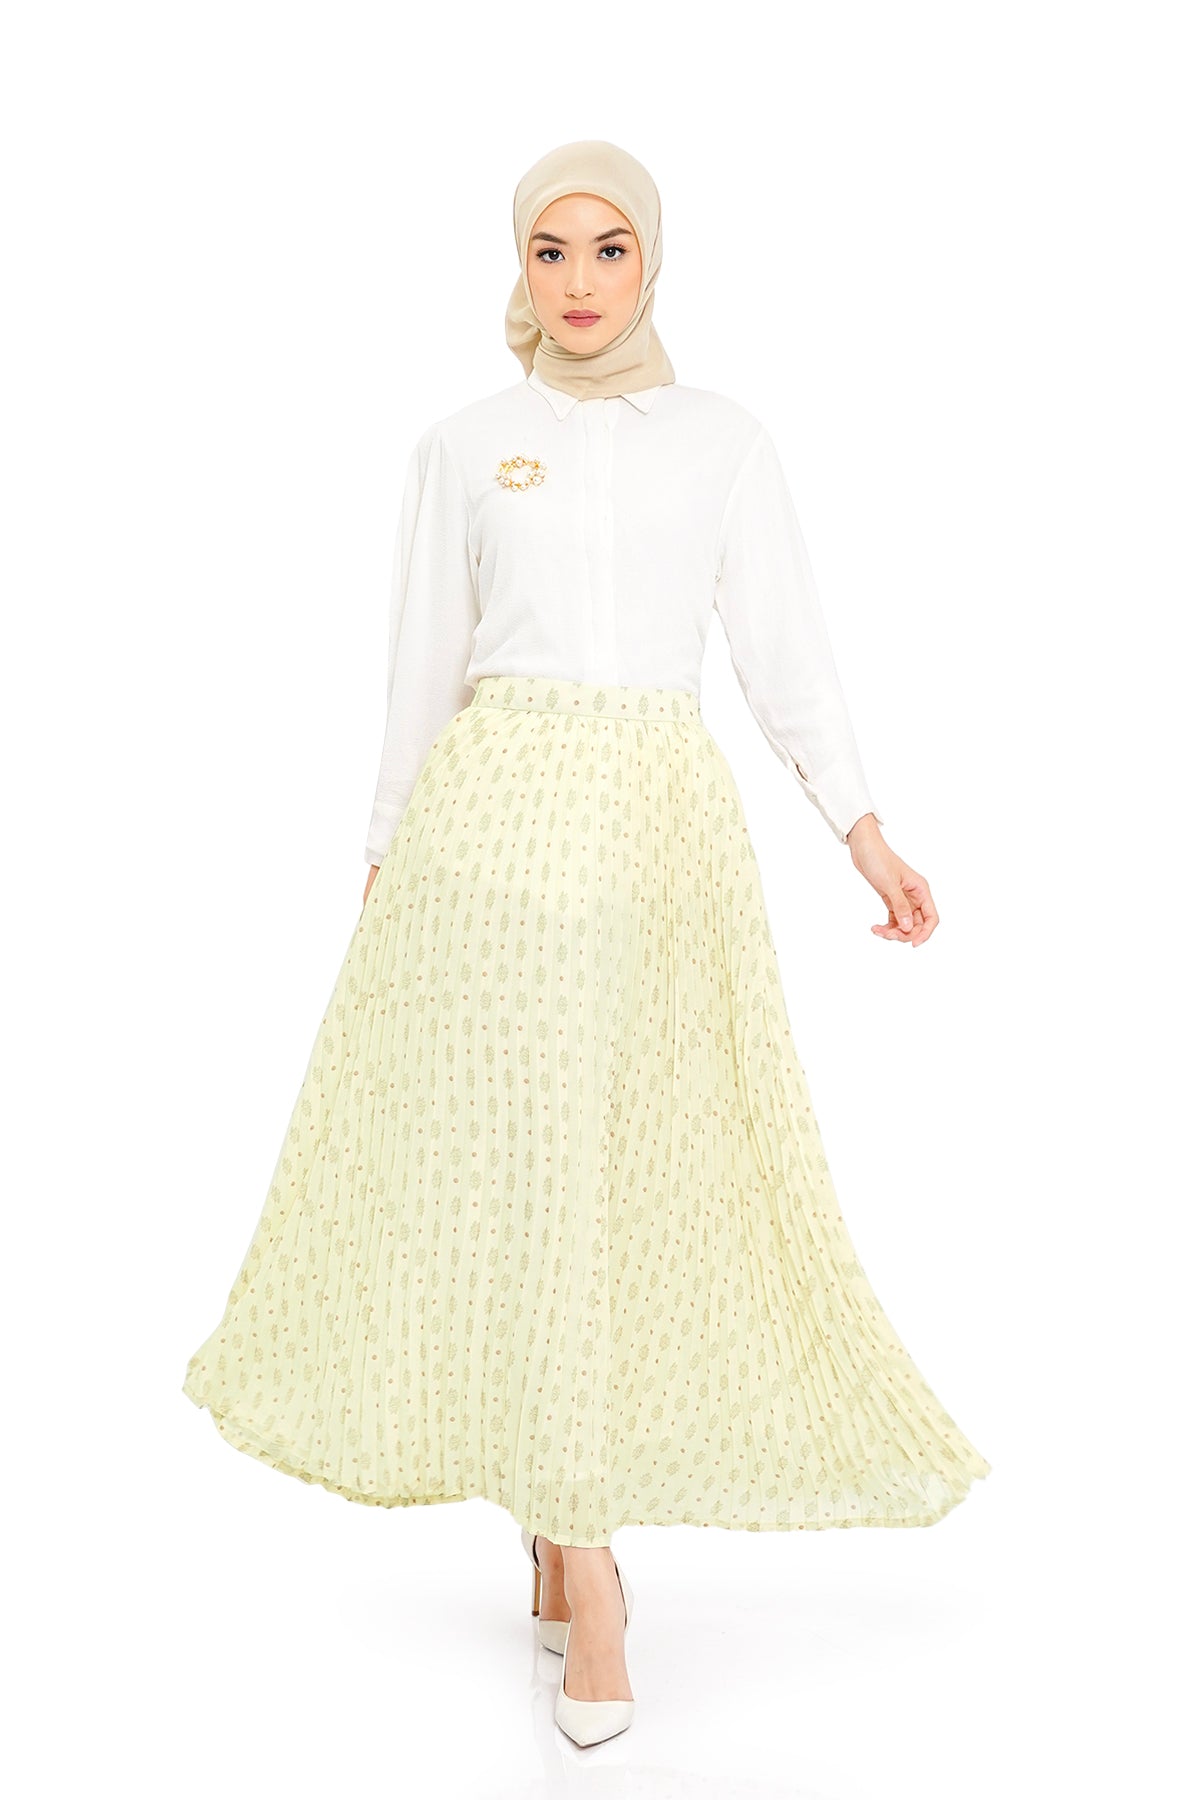 Queena Pleats Skirt - Cream